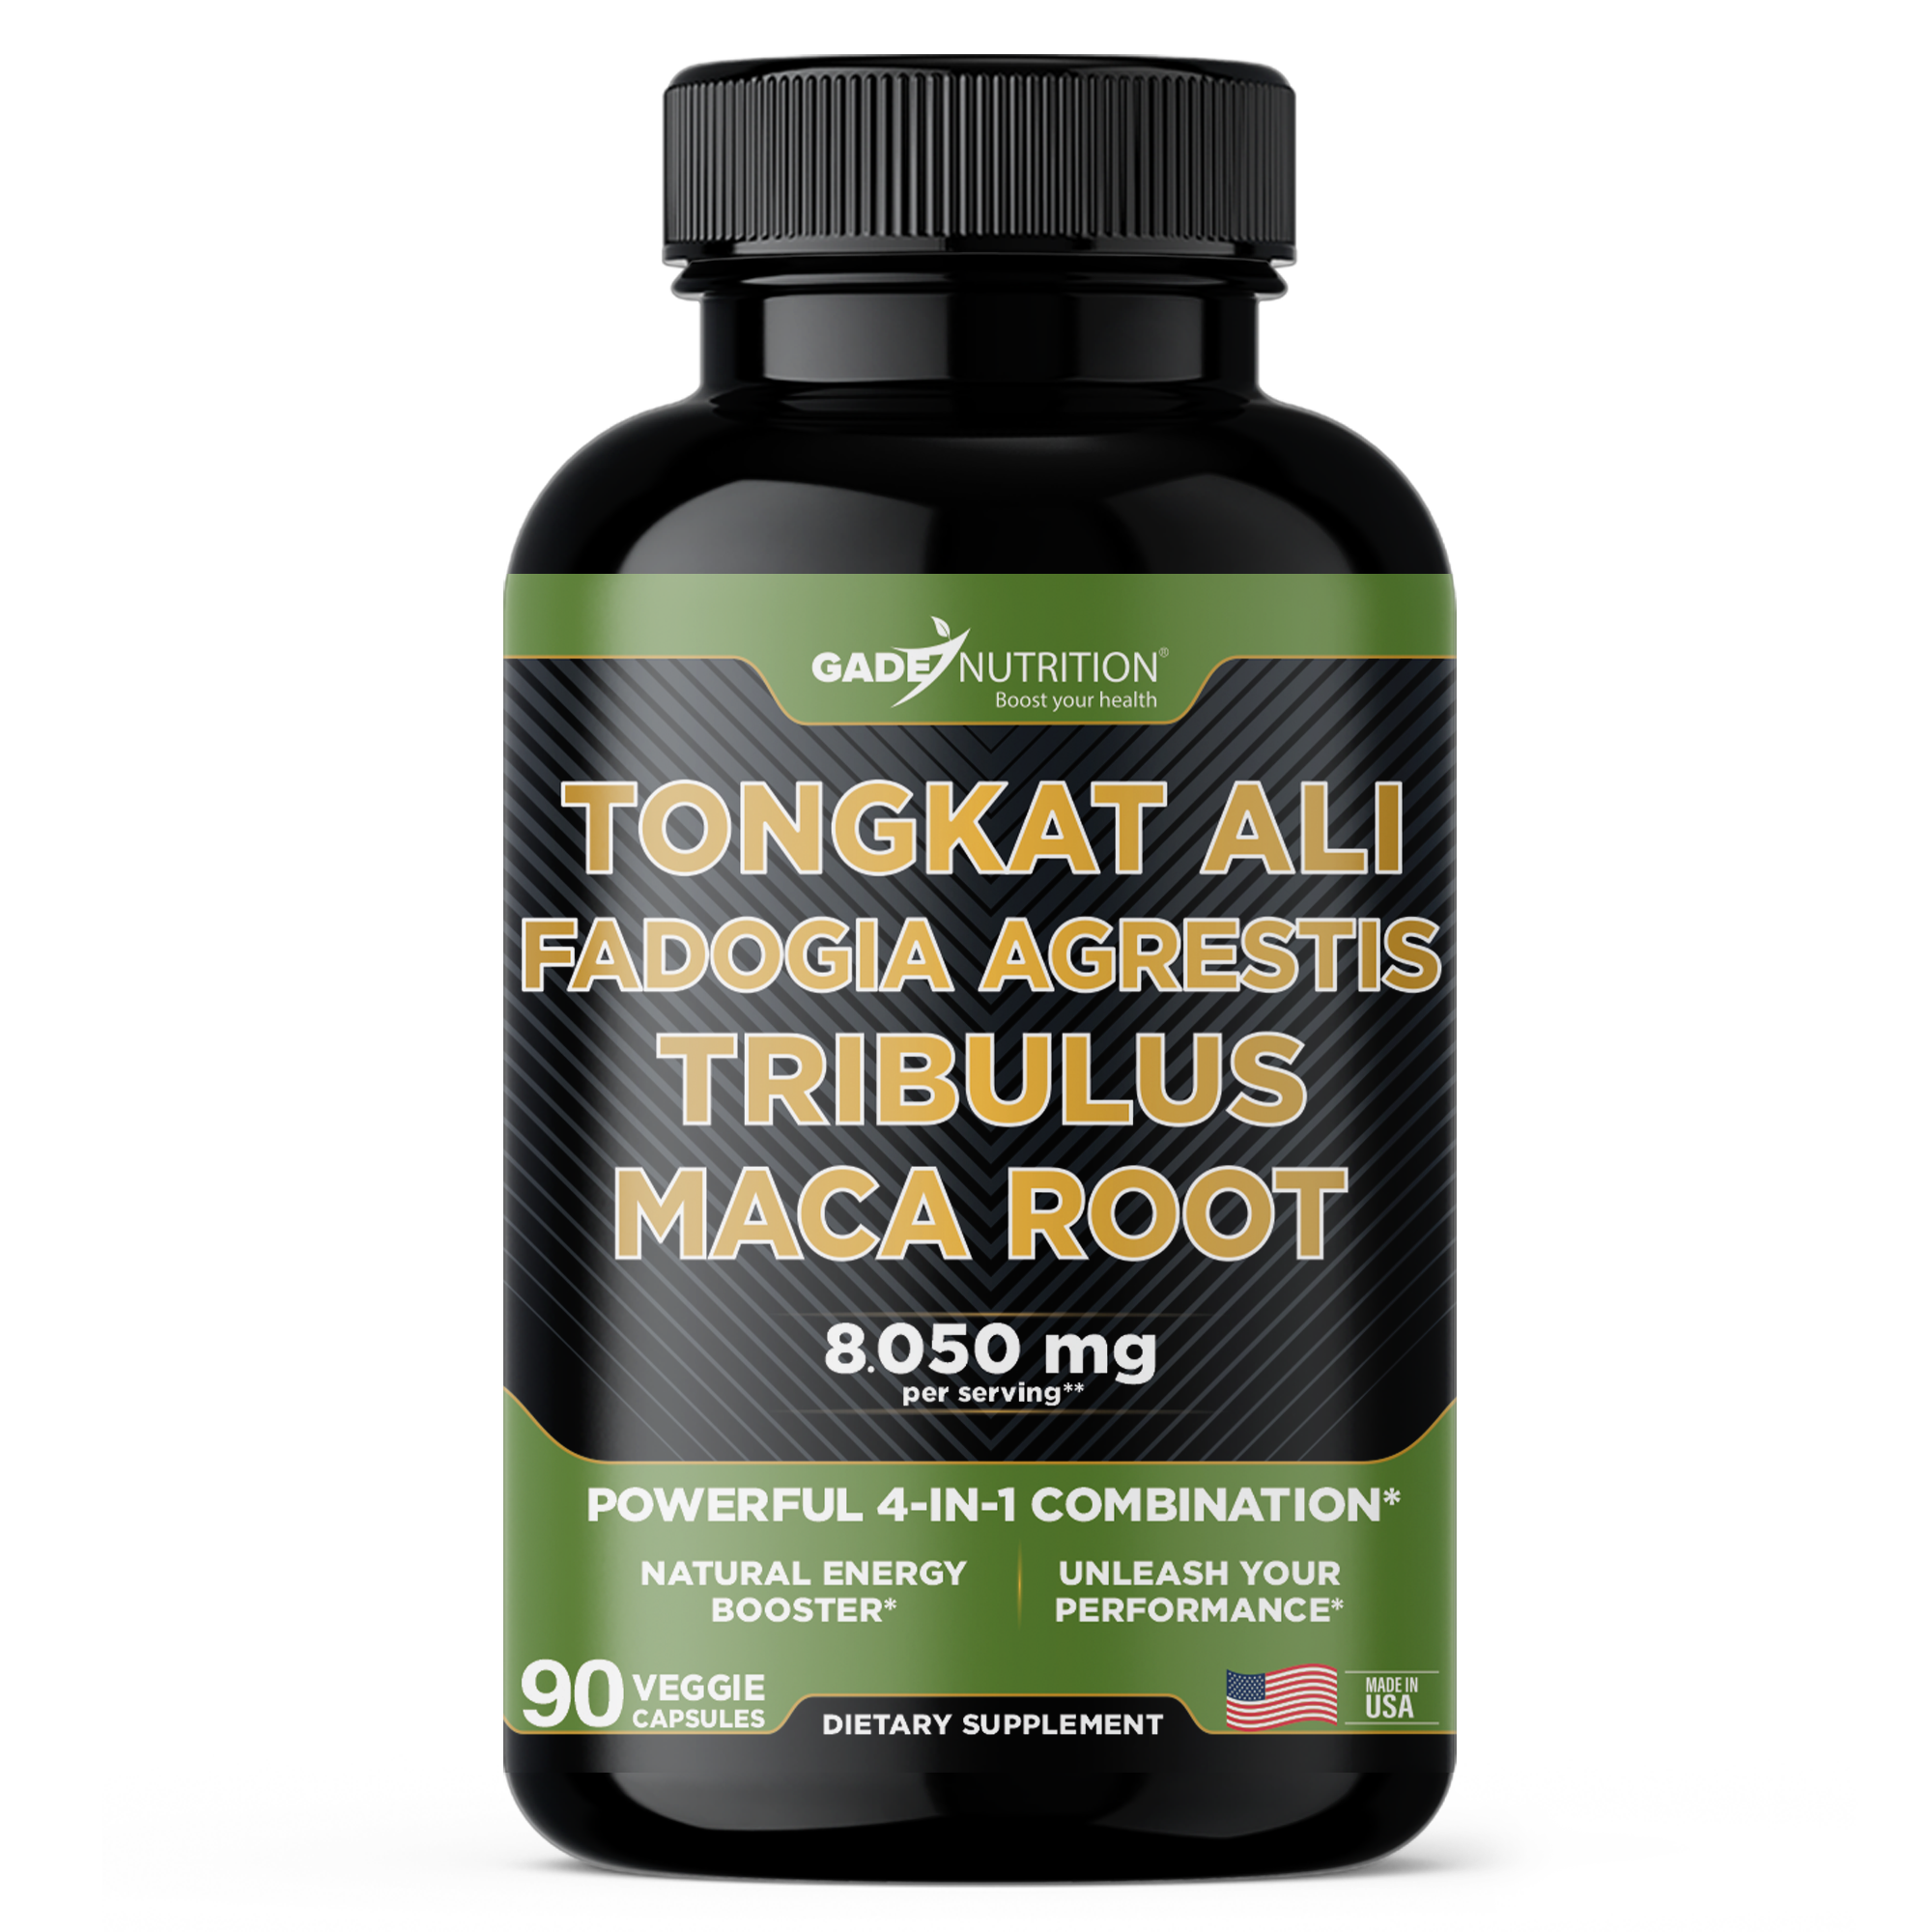 Tongkat Ali, Fadogia Agrestis, Tribulus and Maca Root